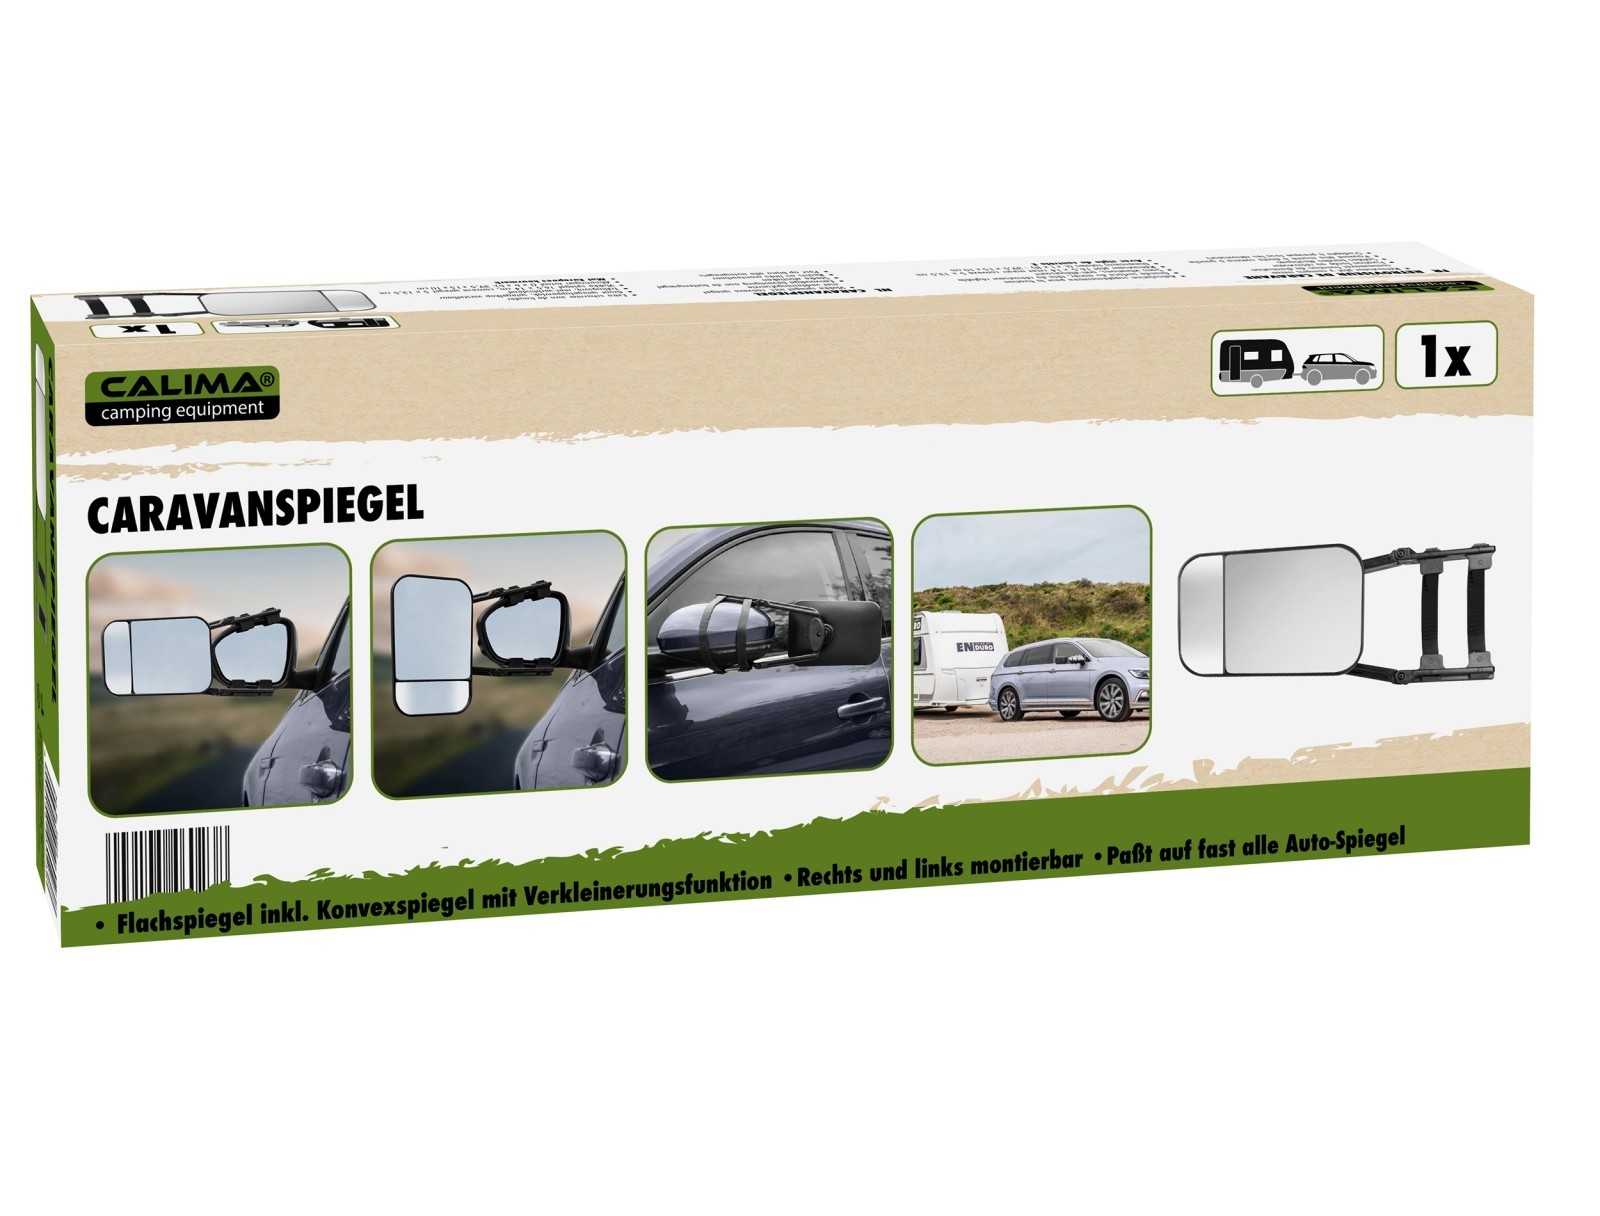 Carpoint Spiegel Fahrschulspiegel Camping Wohnwagen Aufsatz Spiegel  Zusatzspiegel